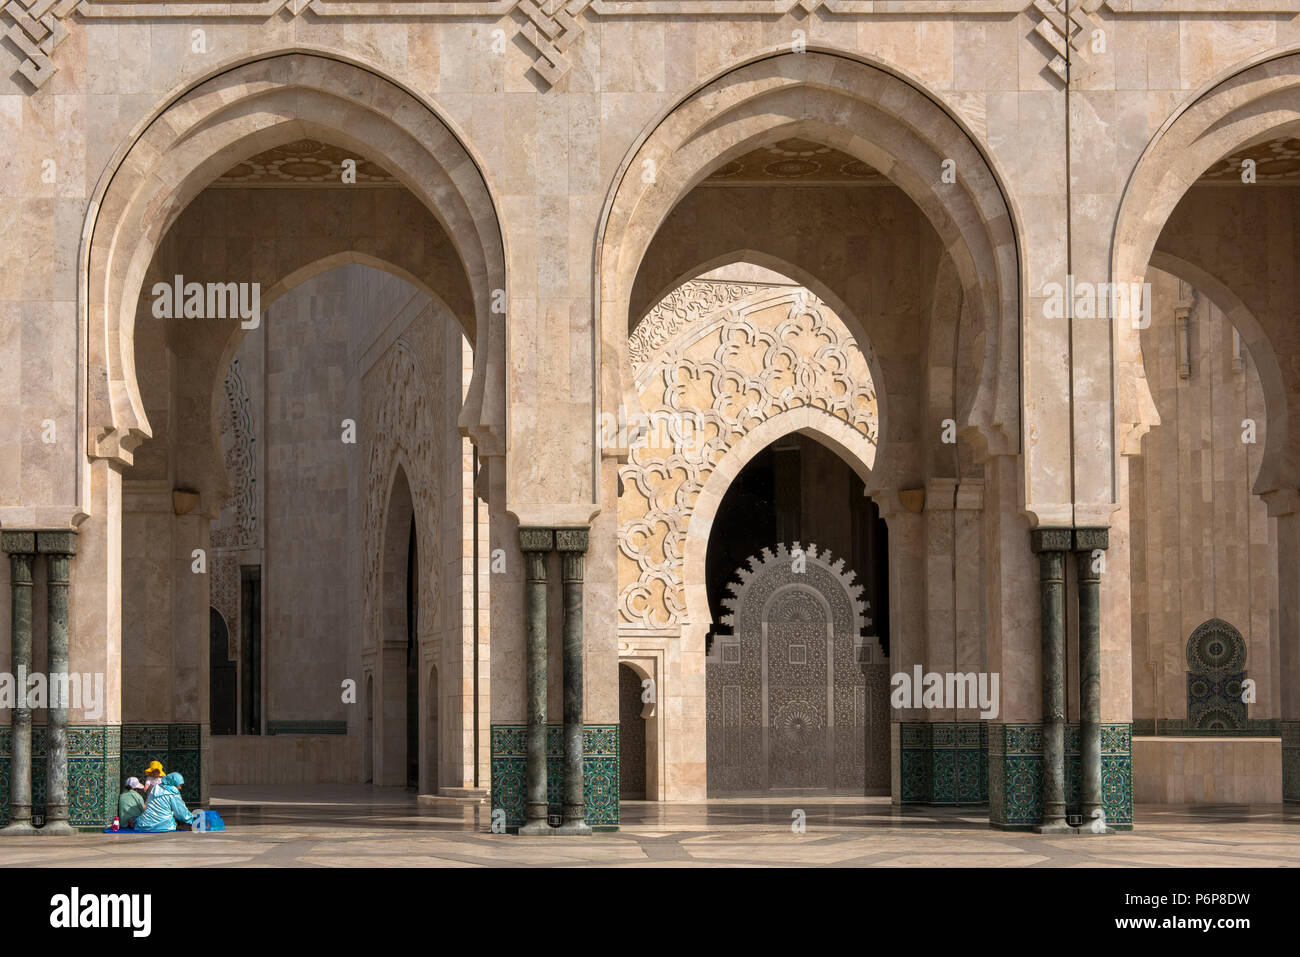 Famille installÃ©e pour une pause dominicale au piede la colonade du pÃ©ristyle de la MosquÃ©e Hassan II. Casablanca, Maroc. Banque D'Images